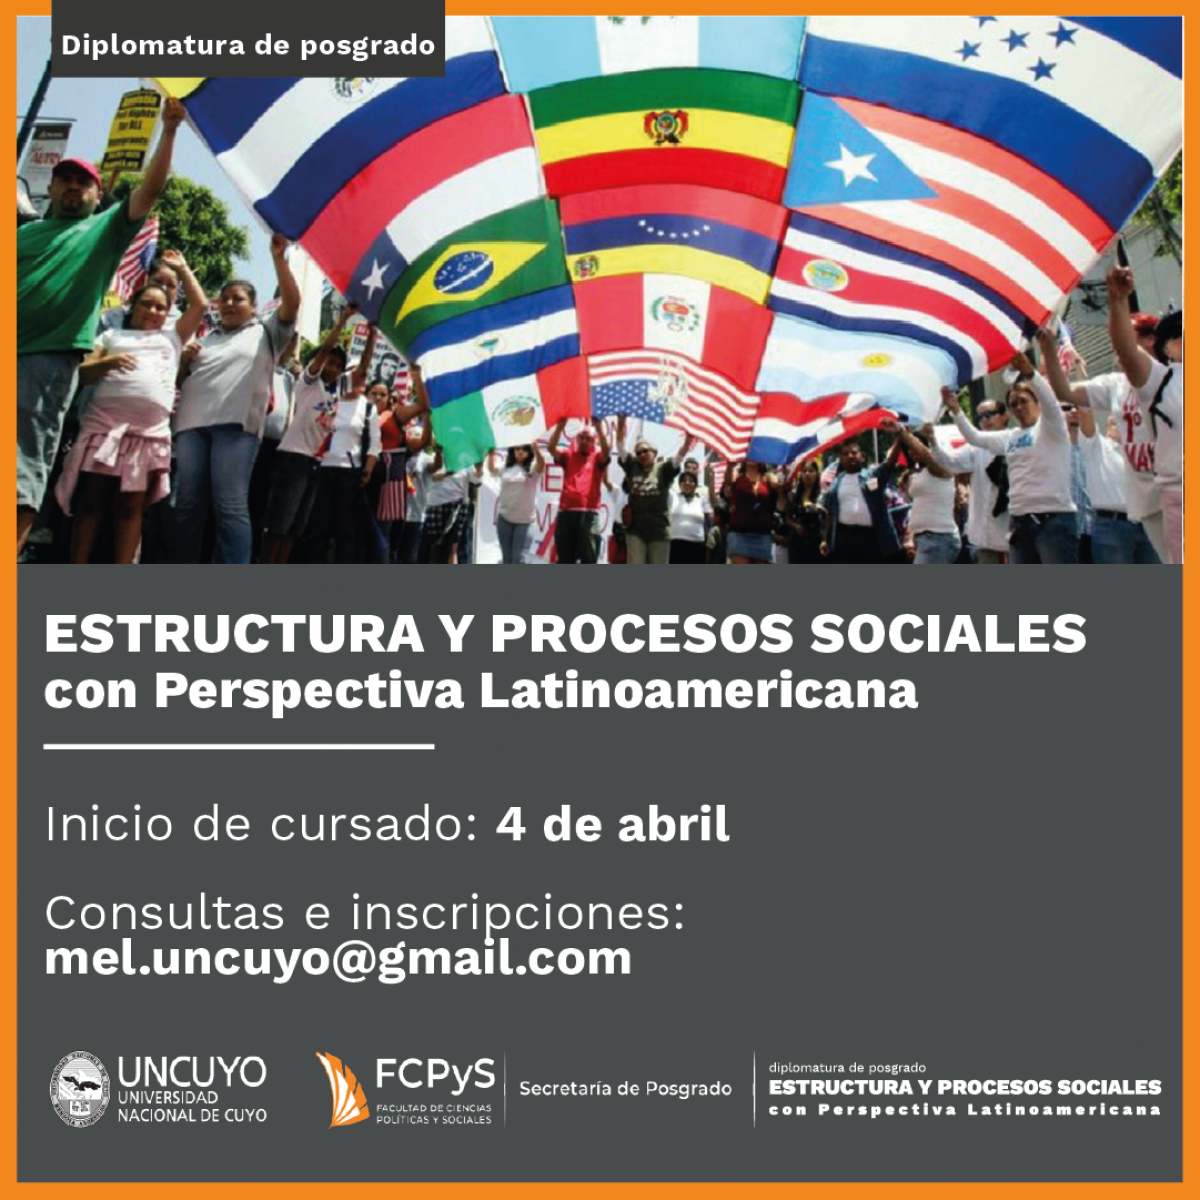 imagen Diplomatura de Posgrado en Estructura y Procesos sociales con perspectiva Latinoamericana